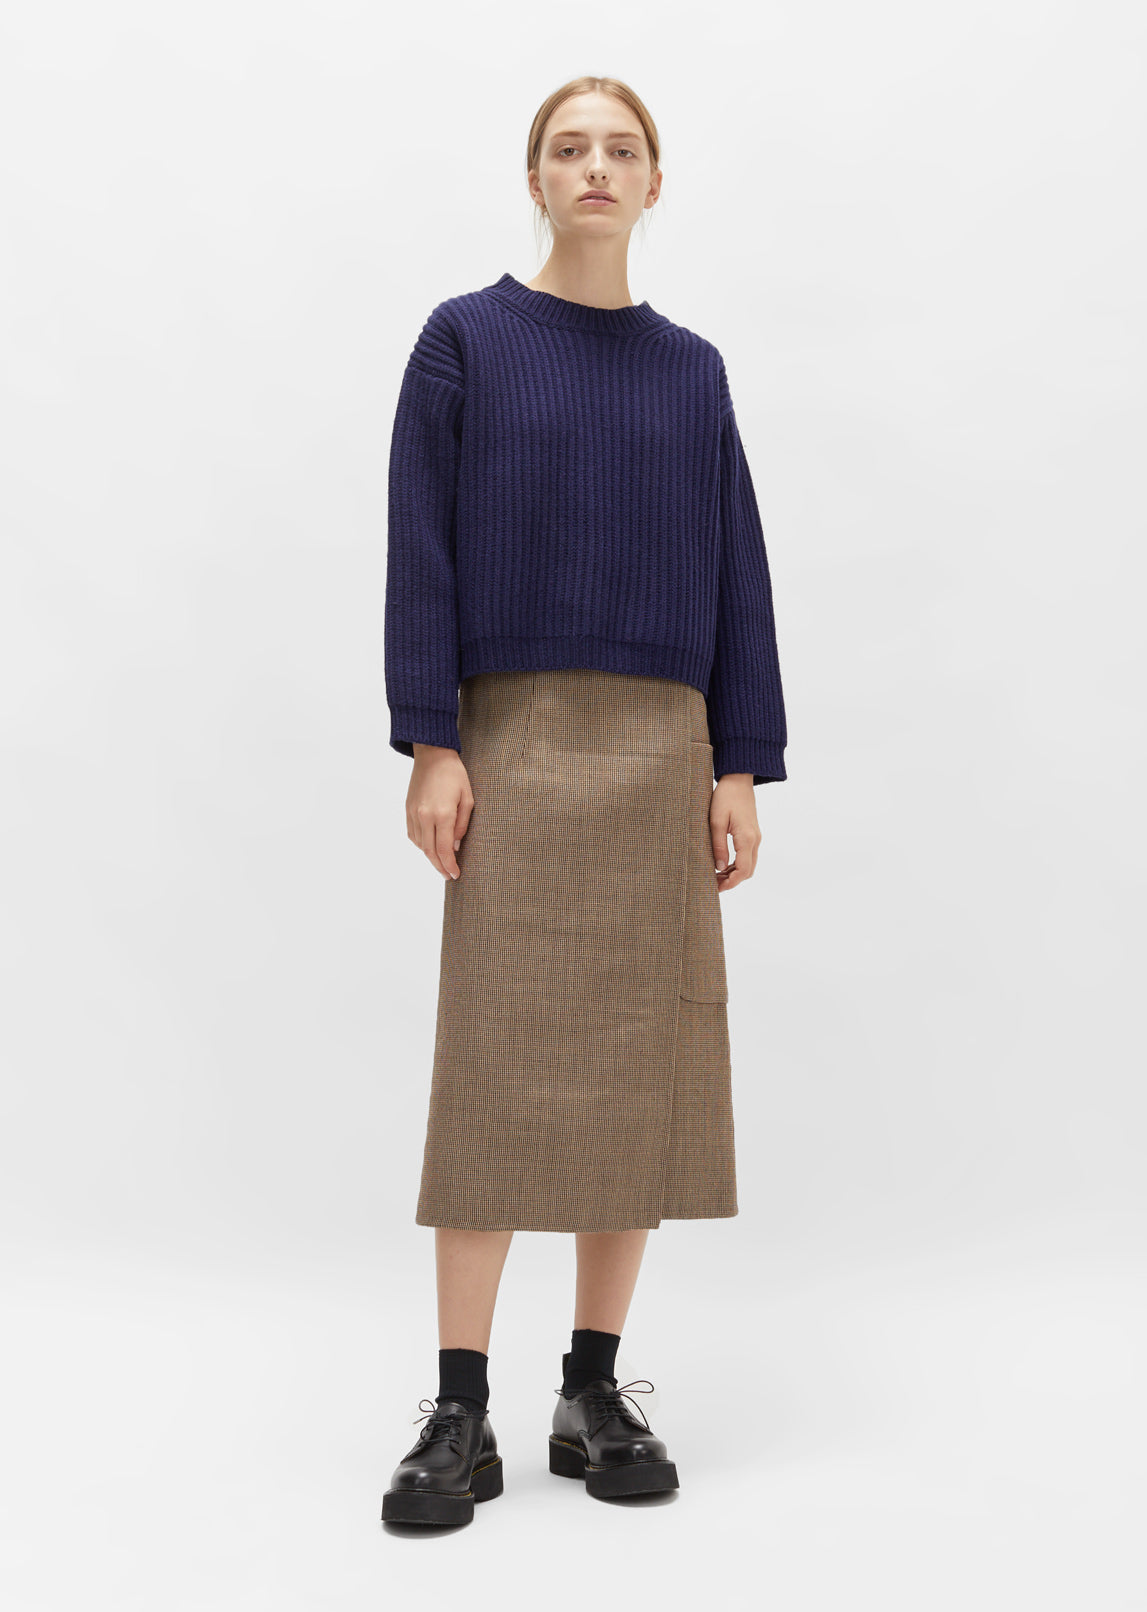 Unisex Wool Crewneck Sweater by Courrèges- La Garçonne